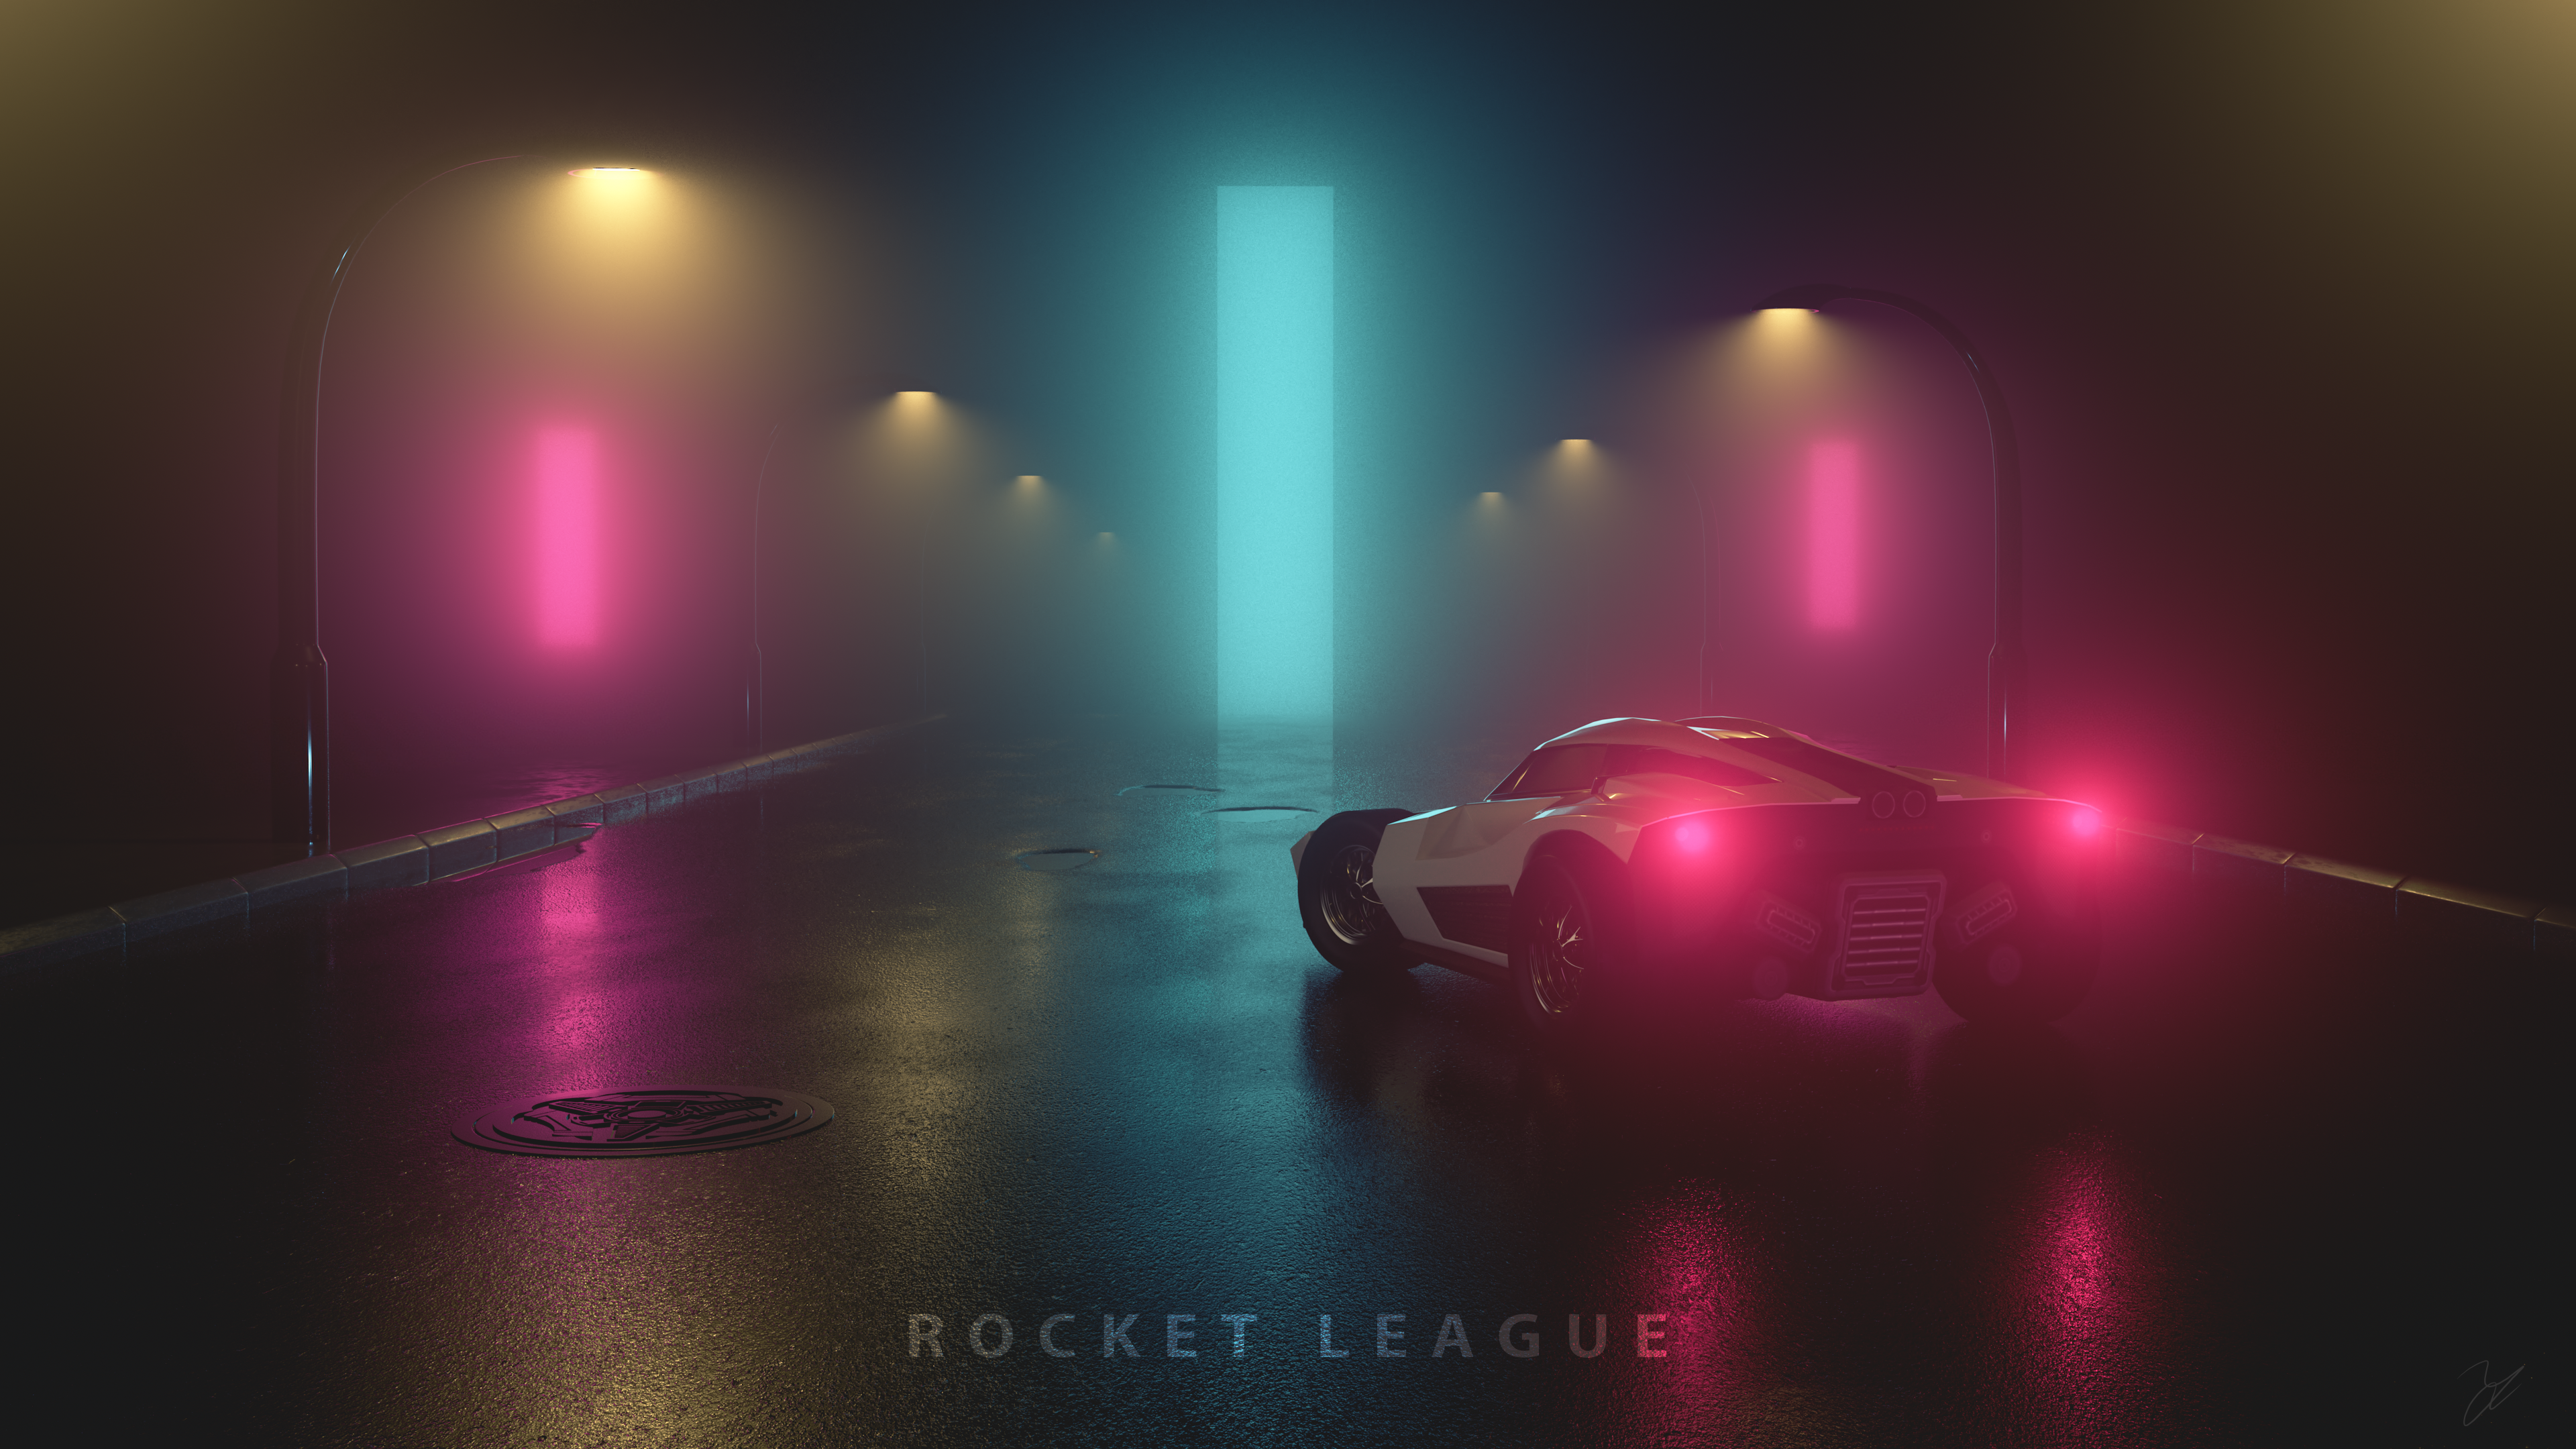 4K Rocket League Wallpaper Free 4K Rocket League Background